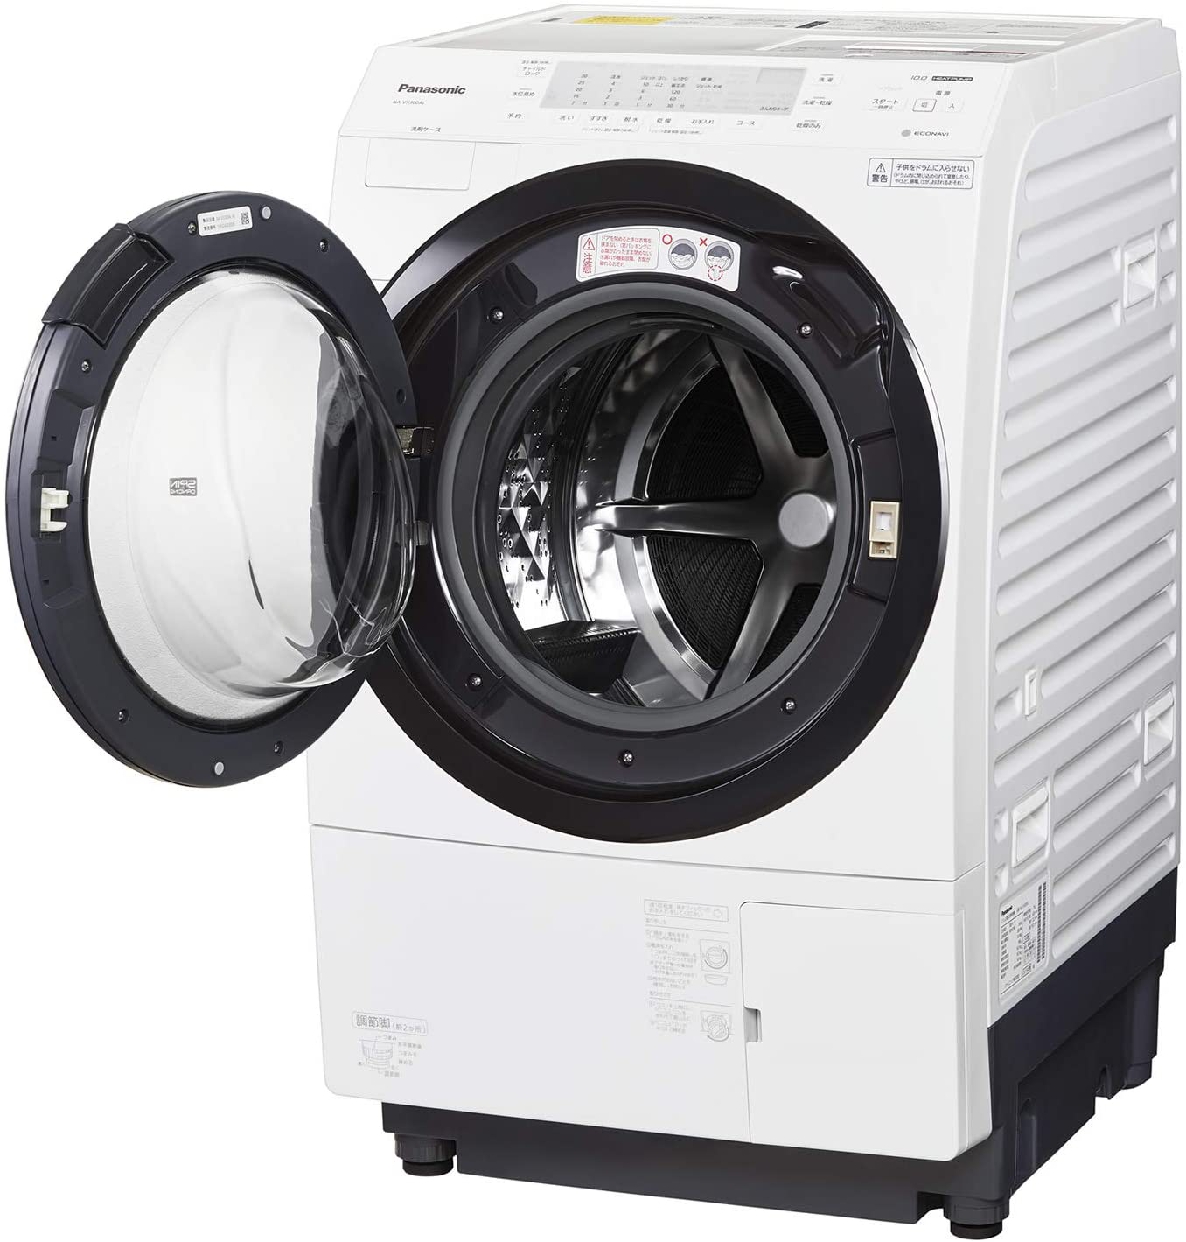 Panasonic(パナソニック) ななめドラム洗濯乾燥機 NA-VX300ALの商品画像3 